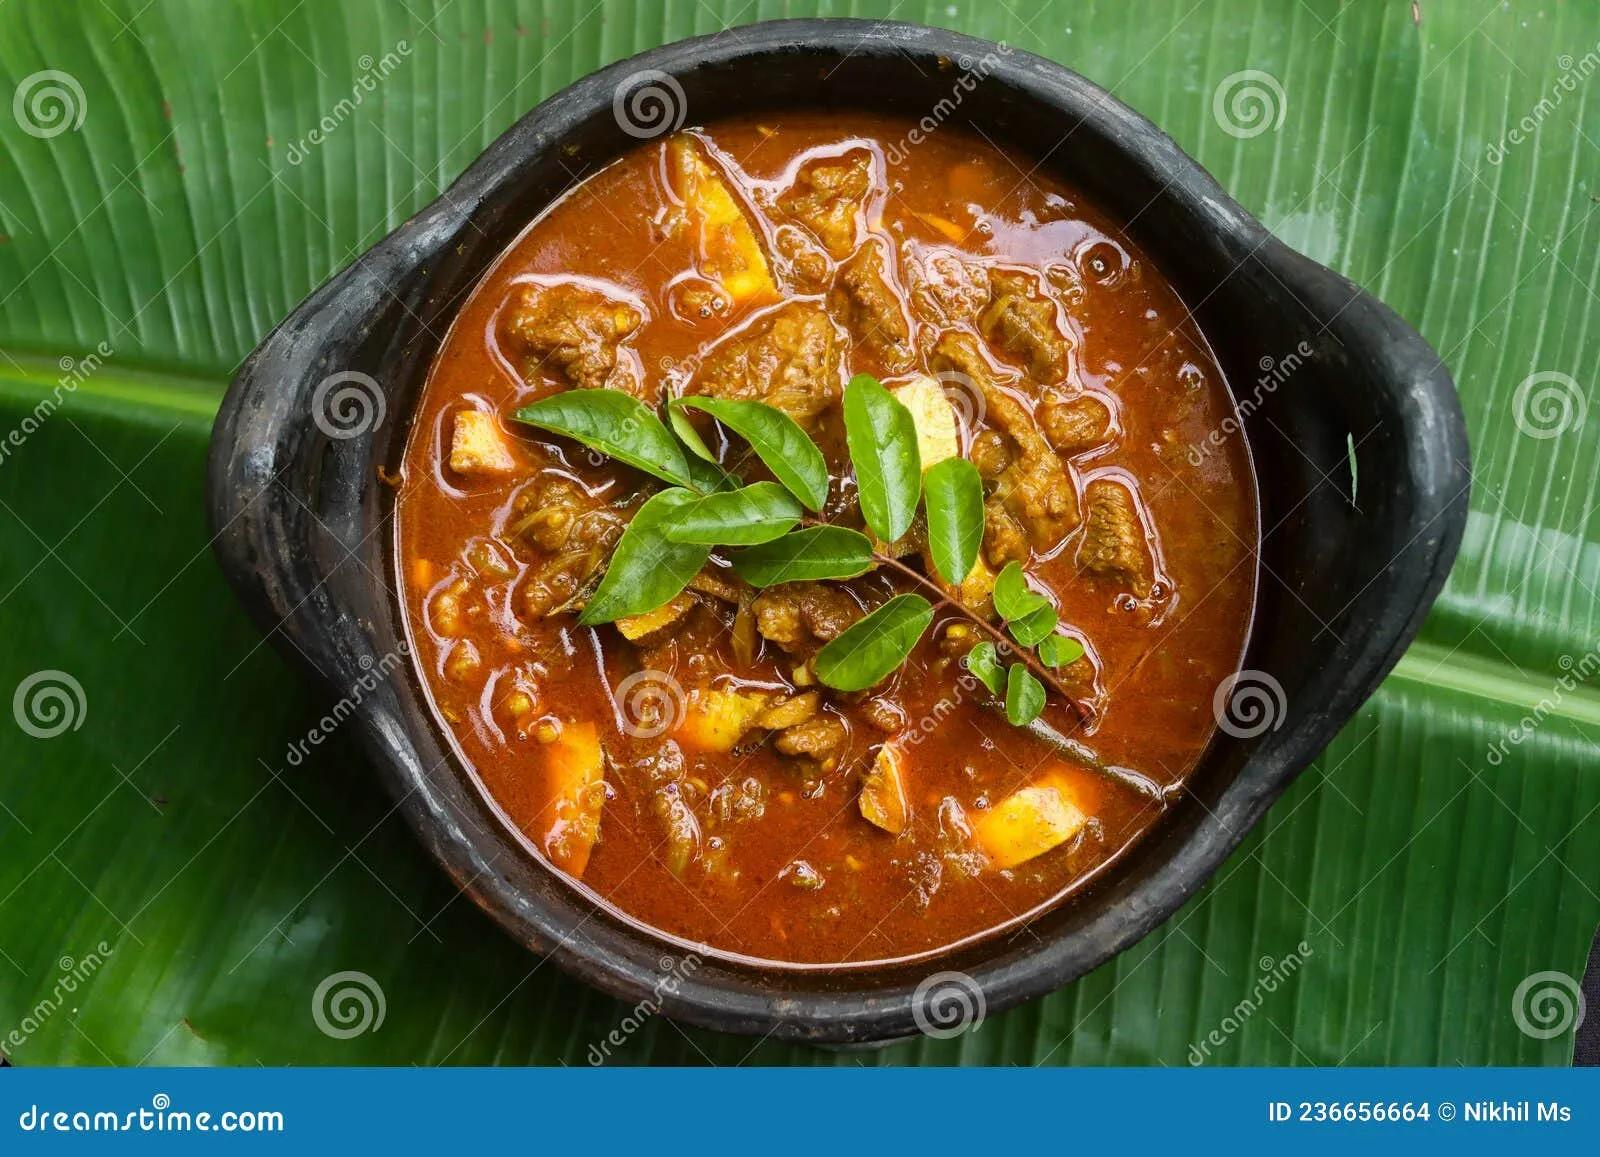 Rindfleisch Mit Curry-Kerala-Art Rindfleisch-Rezept Stockfoto - Bild ...